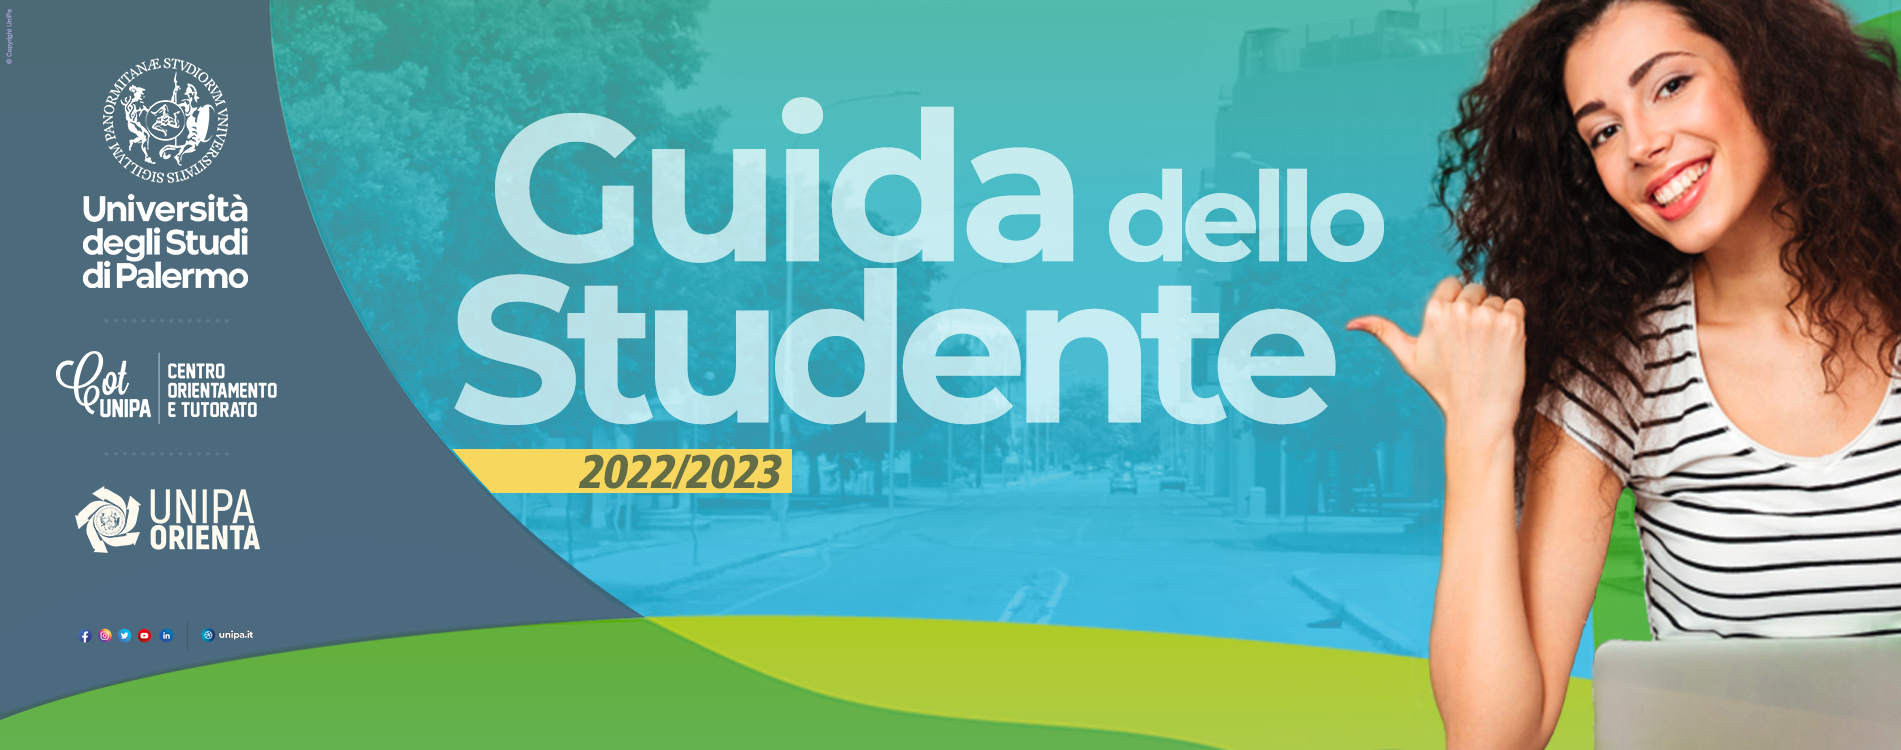 Guida dello studente 2022-2023